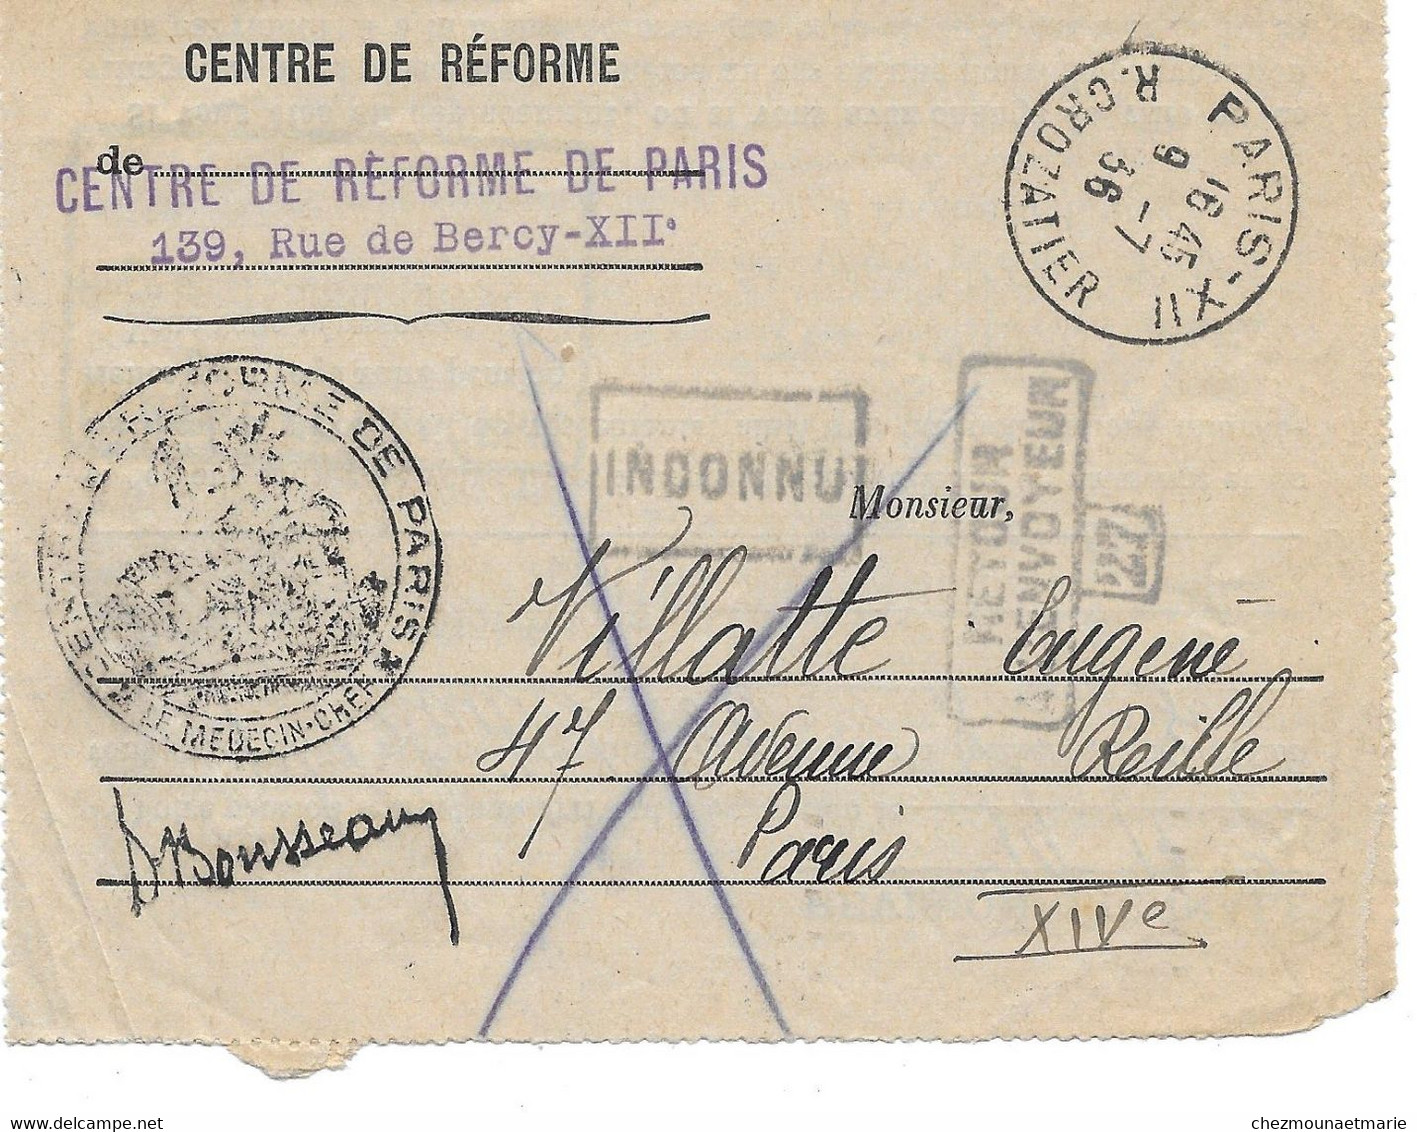 1936 PARIS - CENTRE DE REFORME POUR VILLATTE EUGENE AVENUE REILLE - SURCHARGE INCONNU RETOUR ENVOYEUR 27 - Documenti